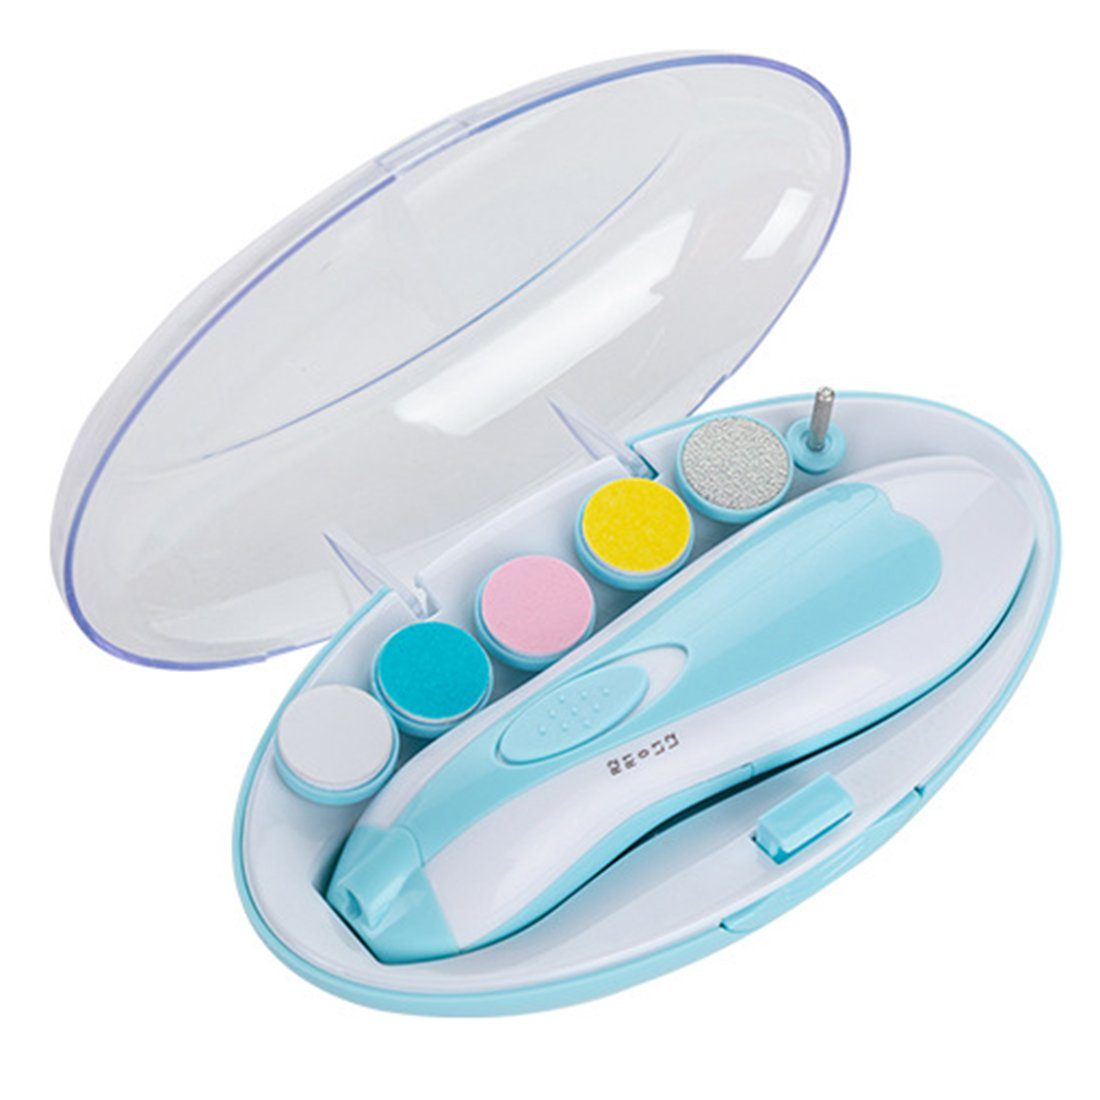 Haiaveng Baby-Fußnagelknipser Elektrischer Baby-Nagelknipser,mit 6 Schleifkopf, für Neugeborene, Kleinkinder Oder Erwachsene blue